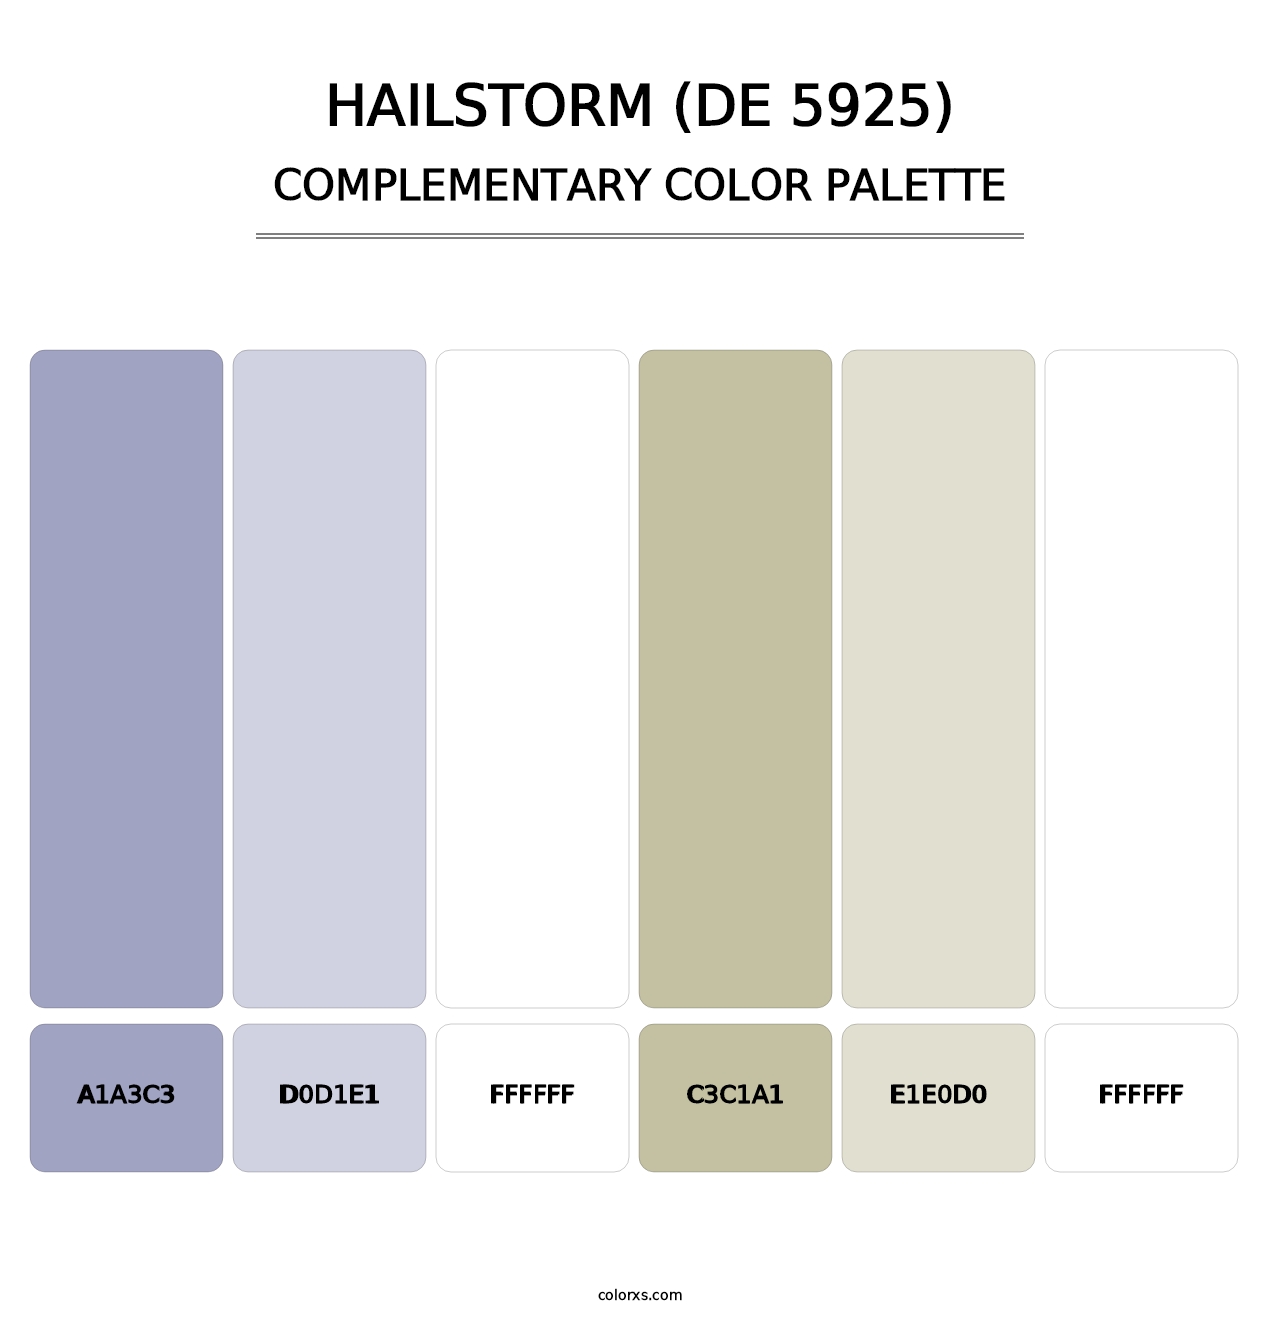 Hailstorm (DE 5925) - Complementary Color Palette